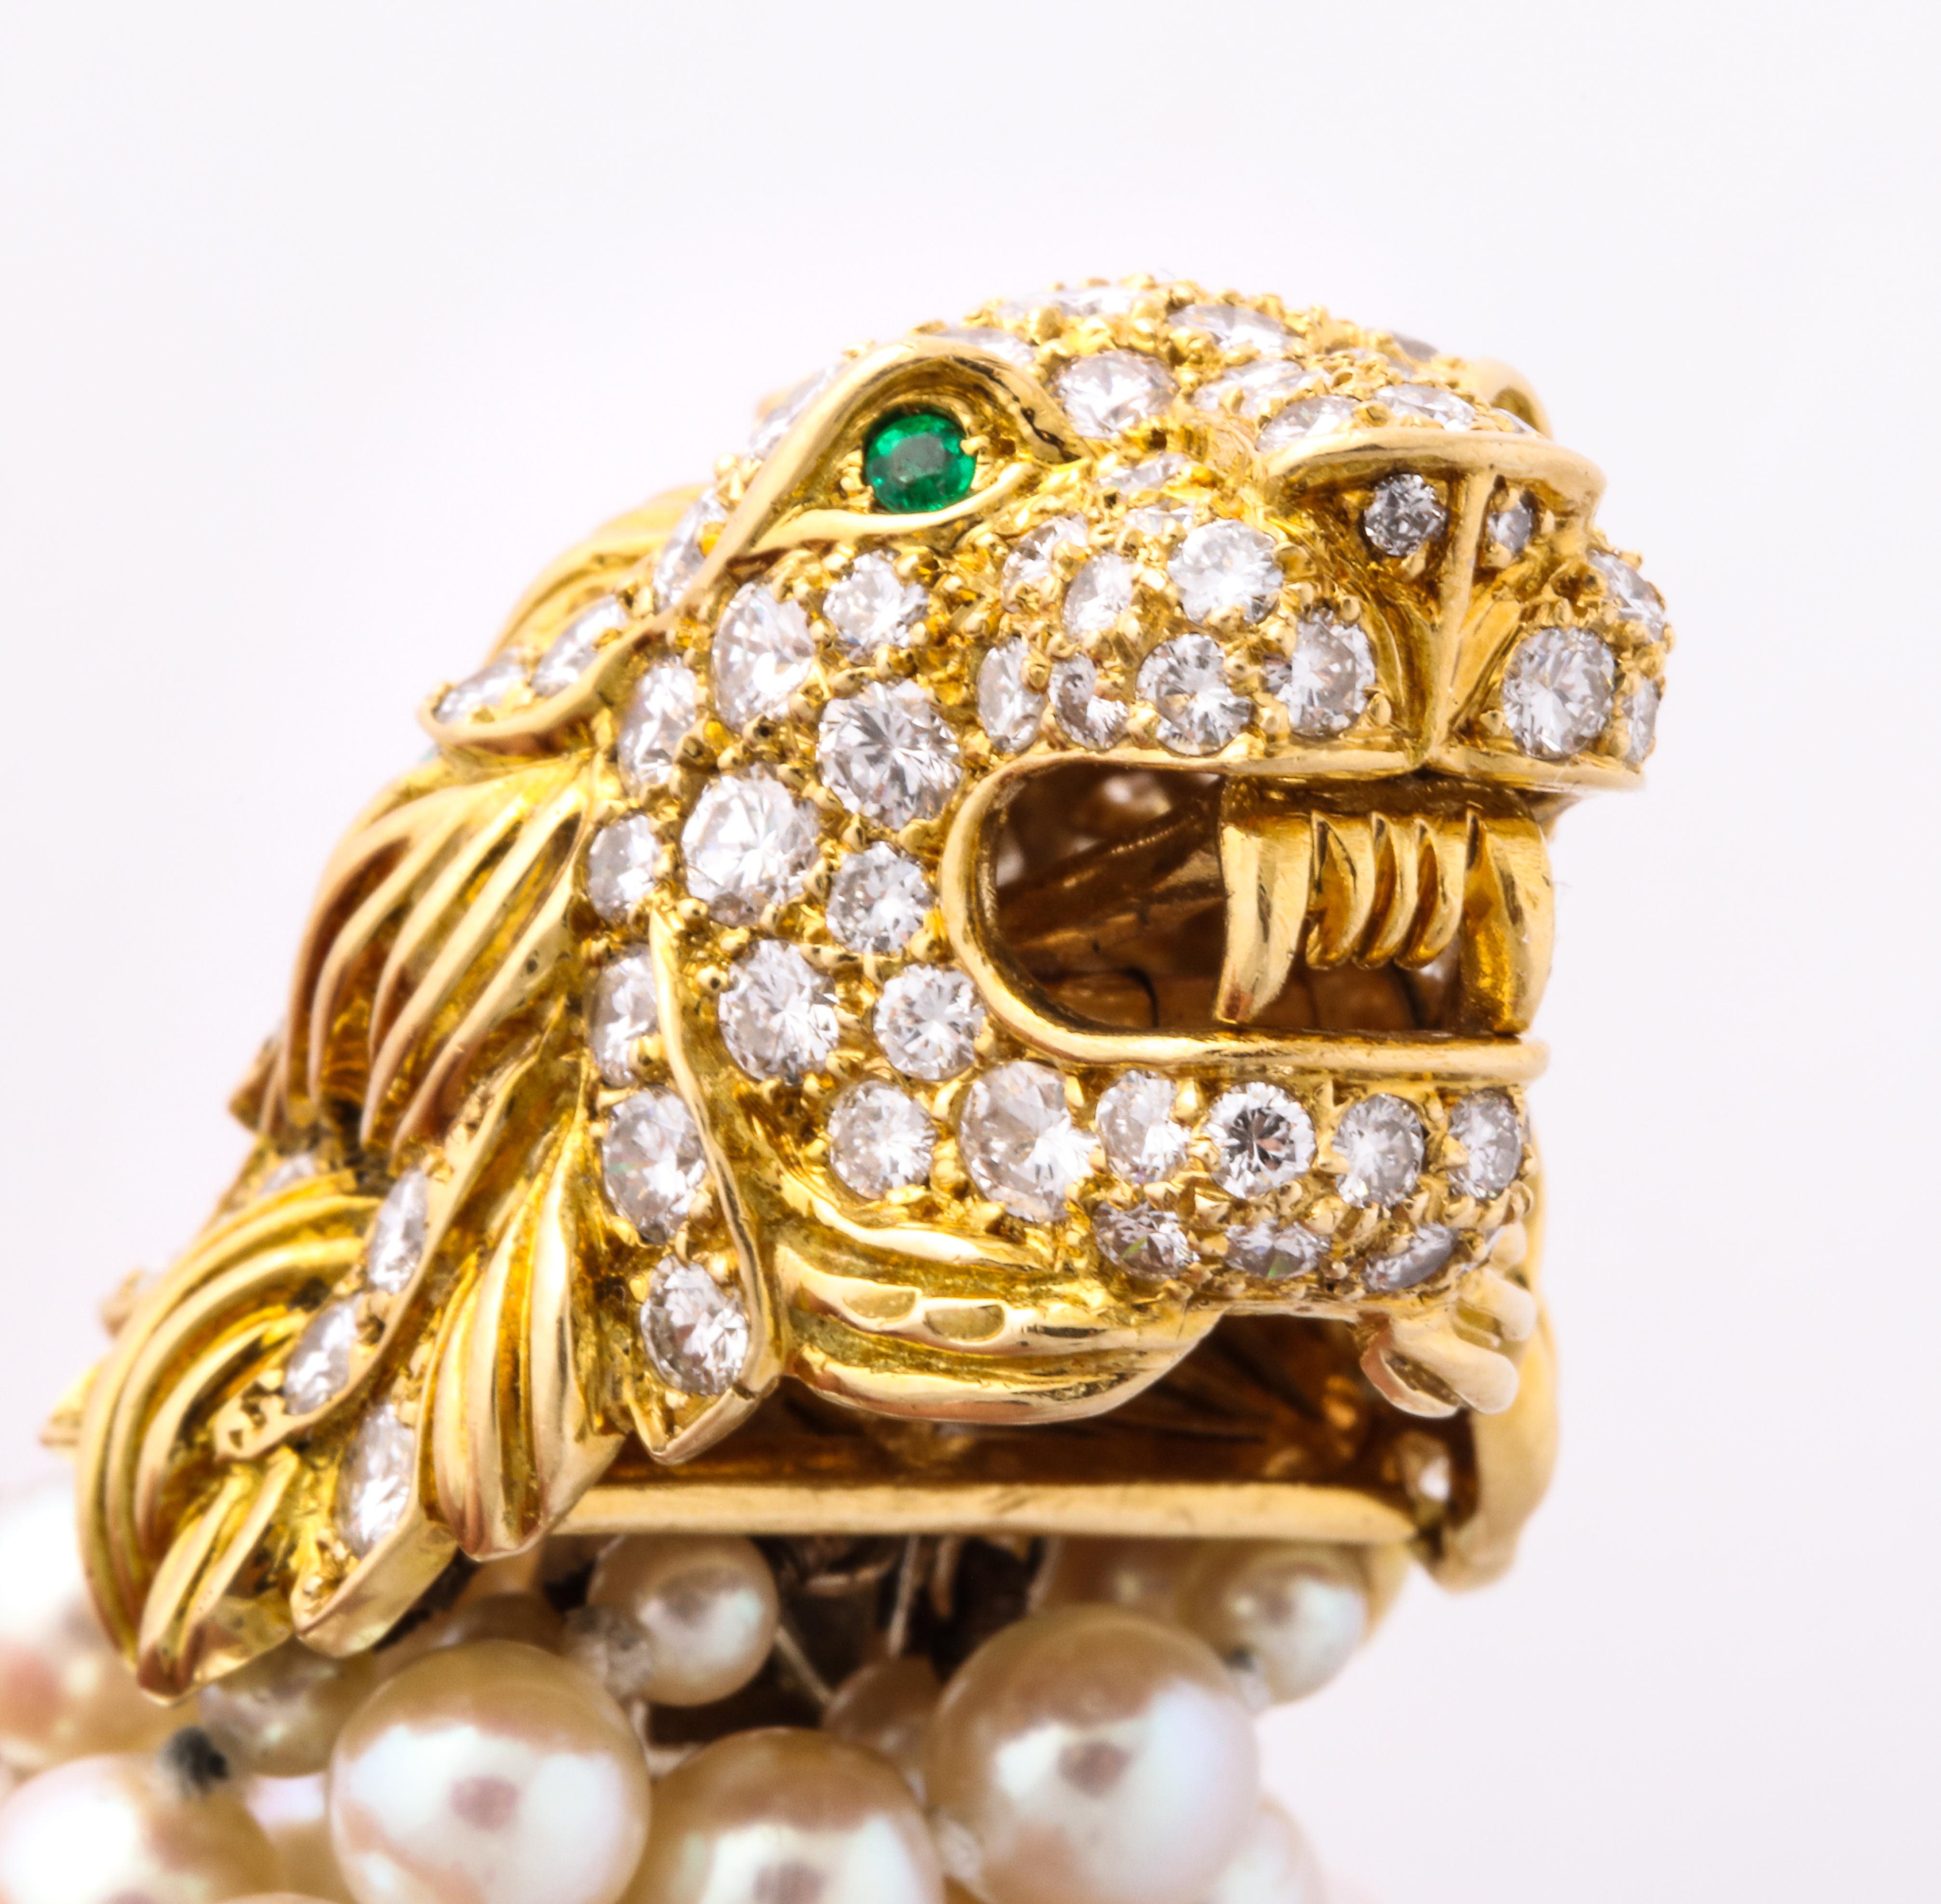 Dieses auffällige Perlenarmband von Van Cleef und Arpels aus dem Jahr 1969 hat einen atemberaubenden Löwenkopf als Verschluss mit Smaragdaugen und wunderschöner Diamantarbeit.

Signiert Van Cleef und Arpels, seriennummeriert und datiert.

Von